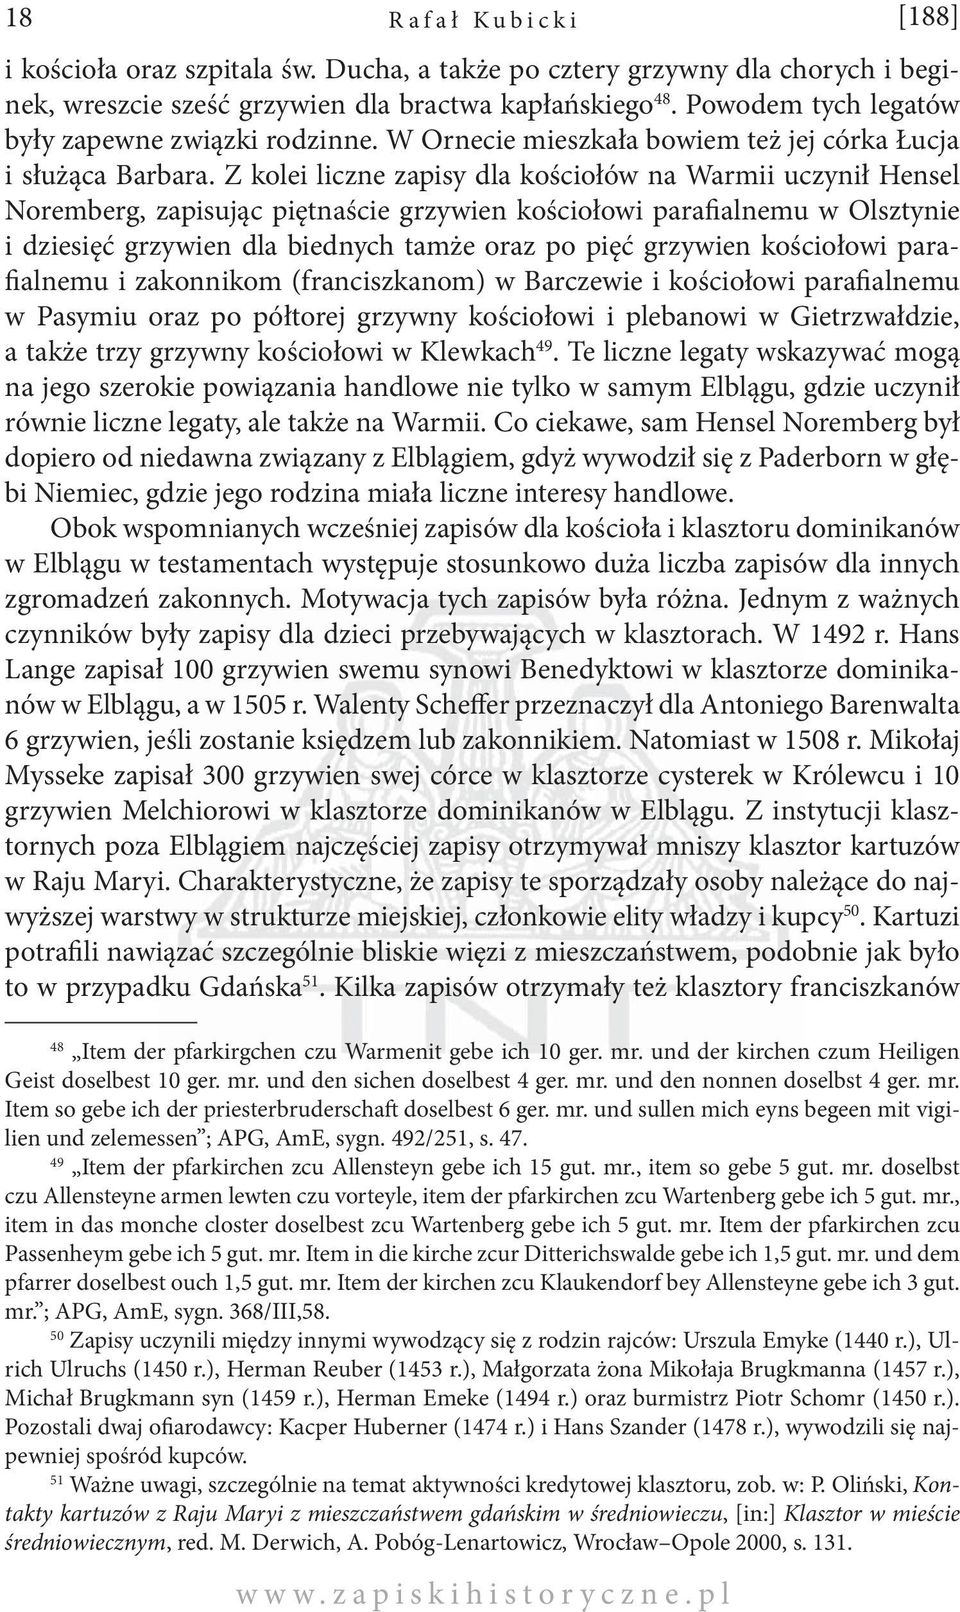 Z kolei liczne zapisy dla kościołów na Warmii uczynił Hensel Noremberg, zapisując piętnaście grzywien kościołowi parafialnemu w Olsztynie i dziesięć grzywien dla biednych tamże oraz po pięć grzywien